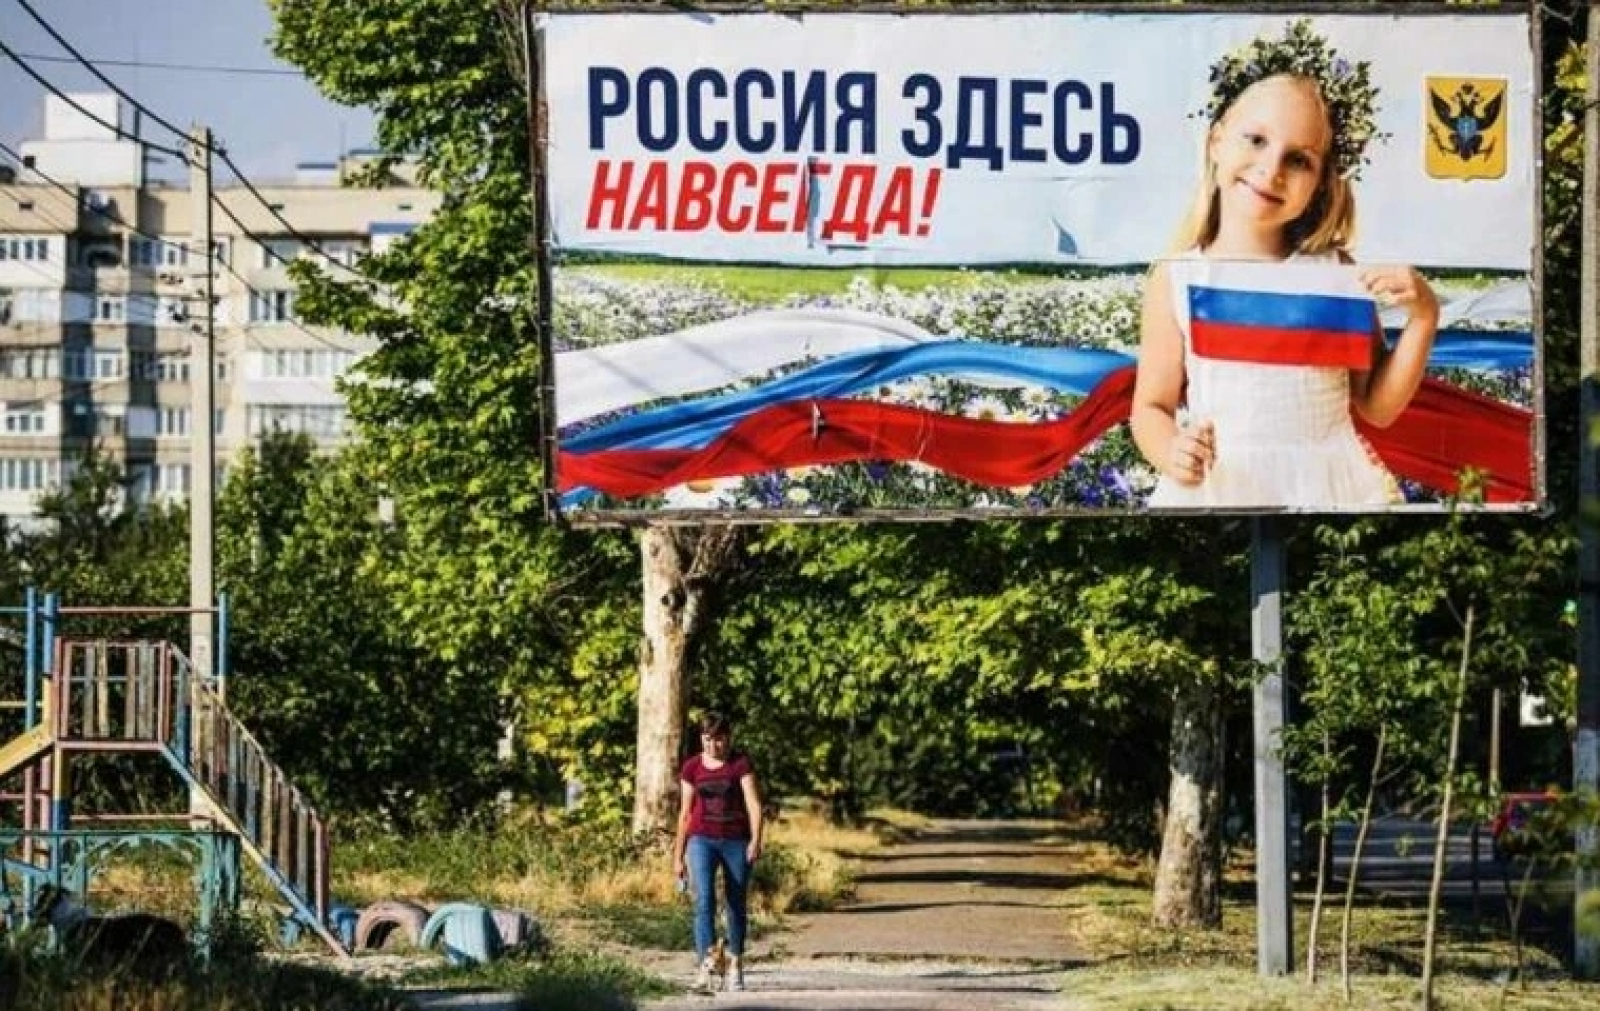 Украина пришла в россию. Предвыборные плакаты. Россия здесь навсегда. Референдум в Херсоне 2022. Референдум в Херсоне.